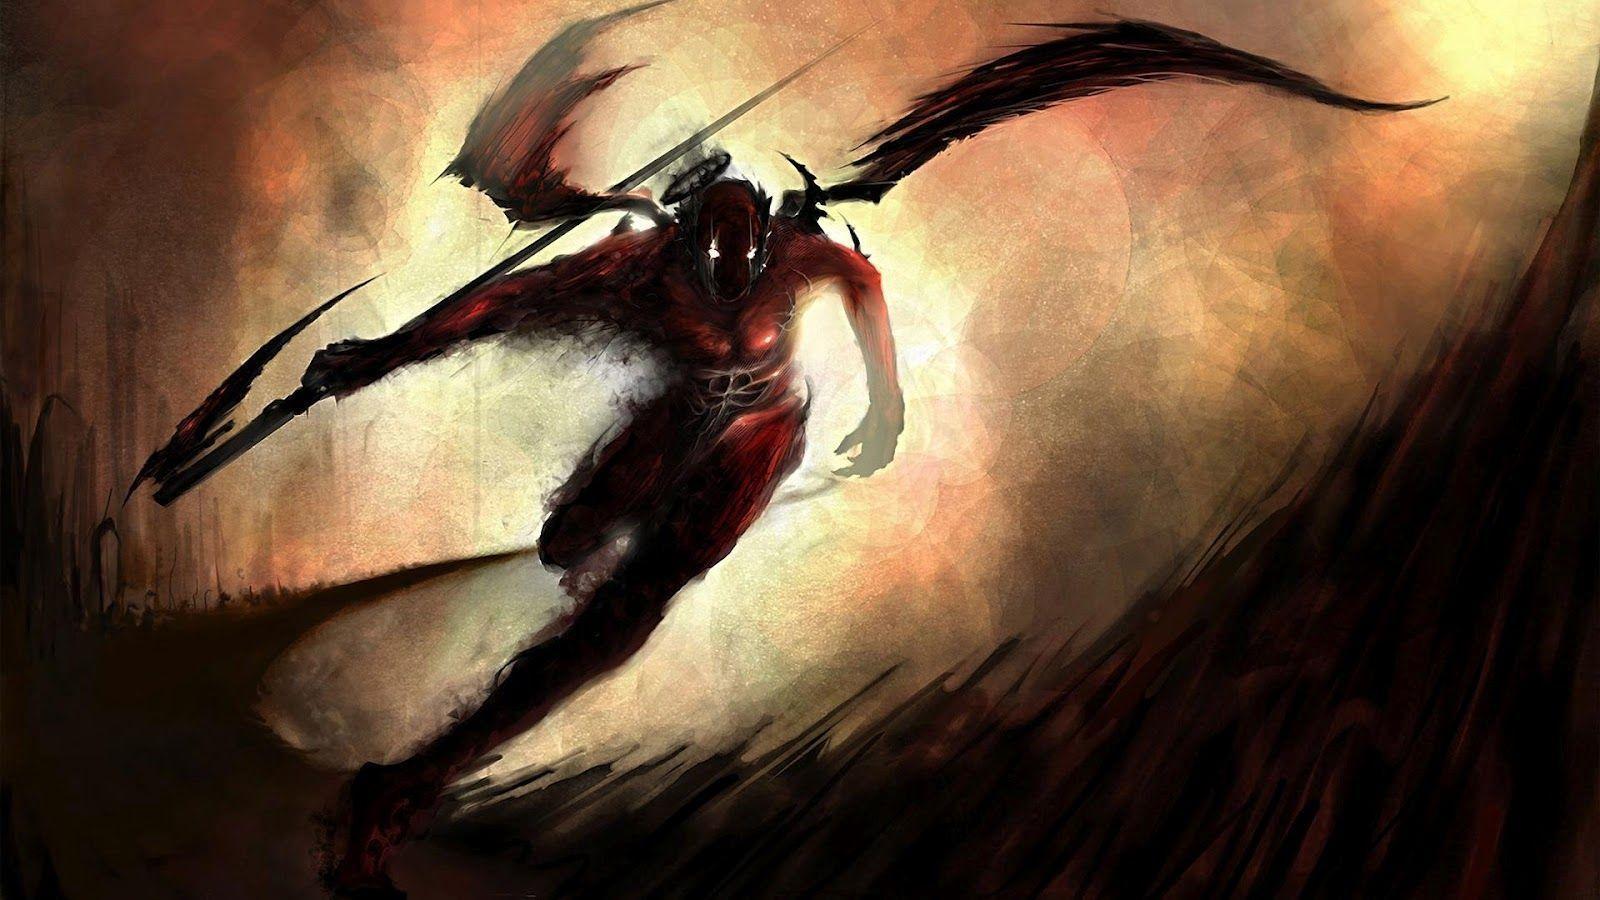 image For > Anime Dark Warrior Wallpaper